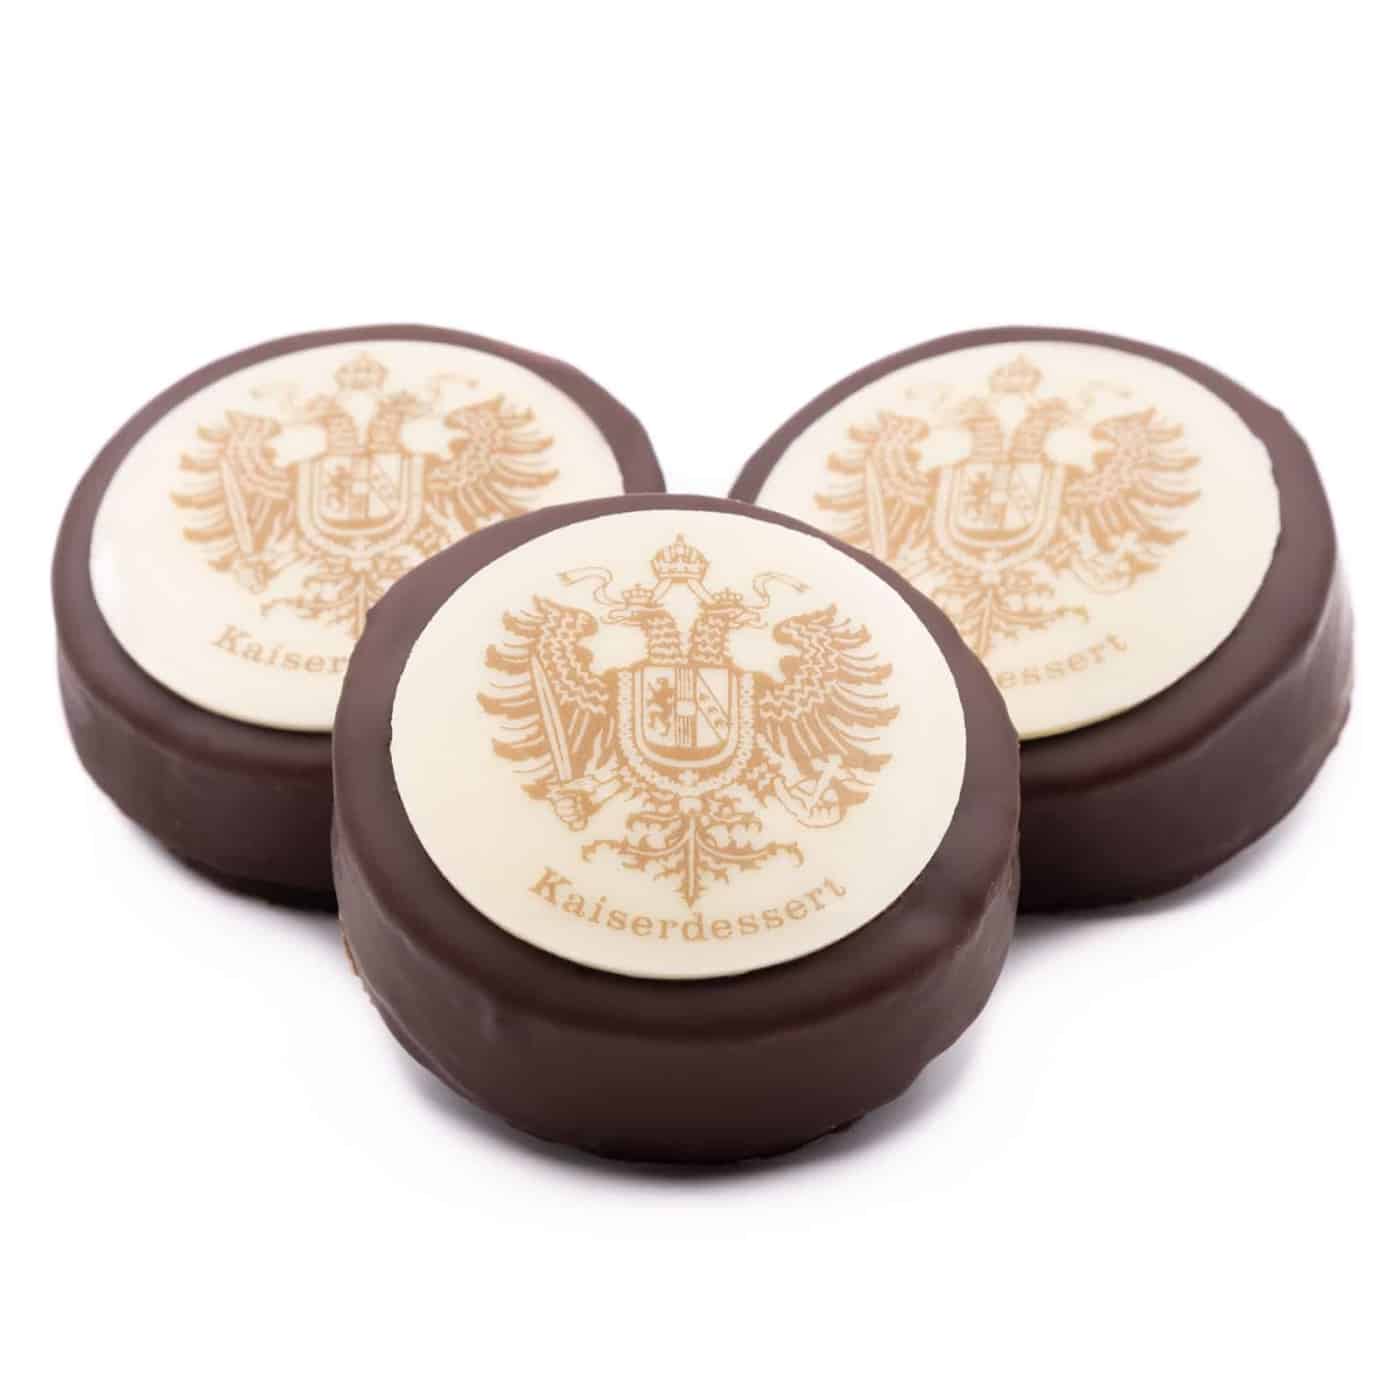 Kaiserdessert Orangen-Marzipan-Törtchen gefüllt mit Cointreau-Trüffelcreme, überzogen mit Zartbitterschokolade und weißer Schokolade.